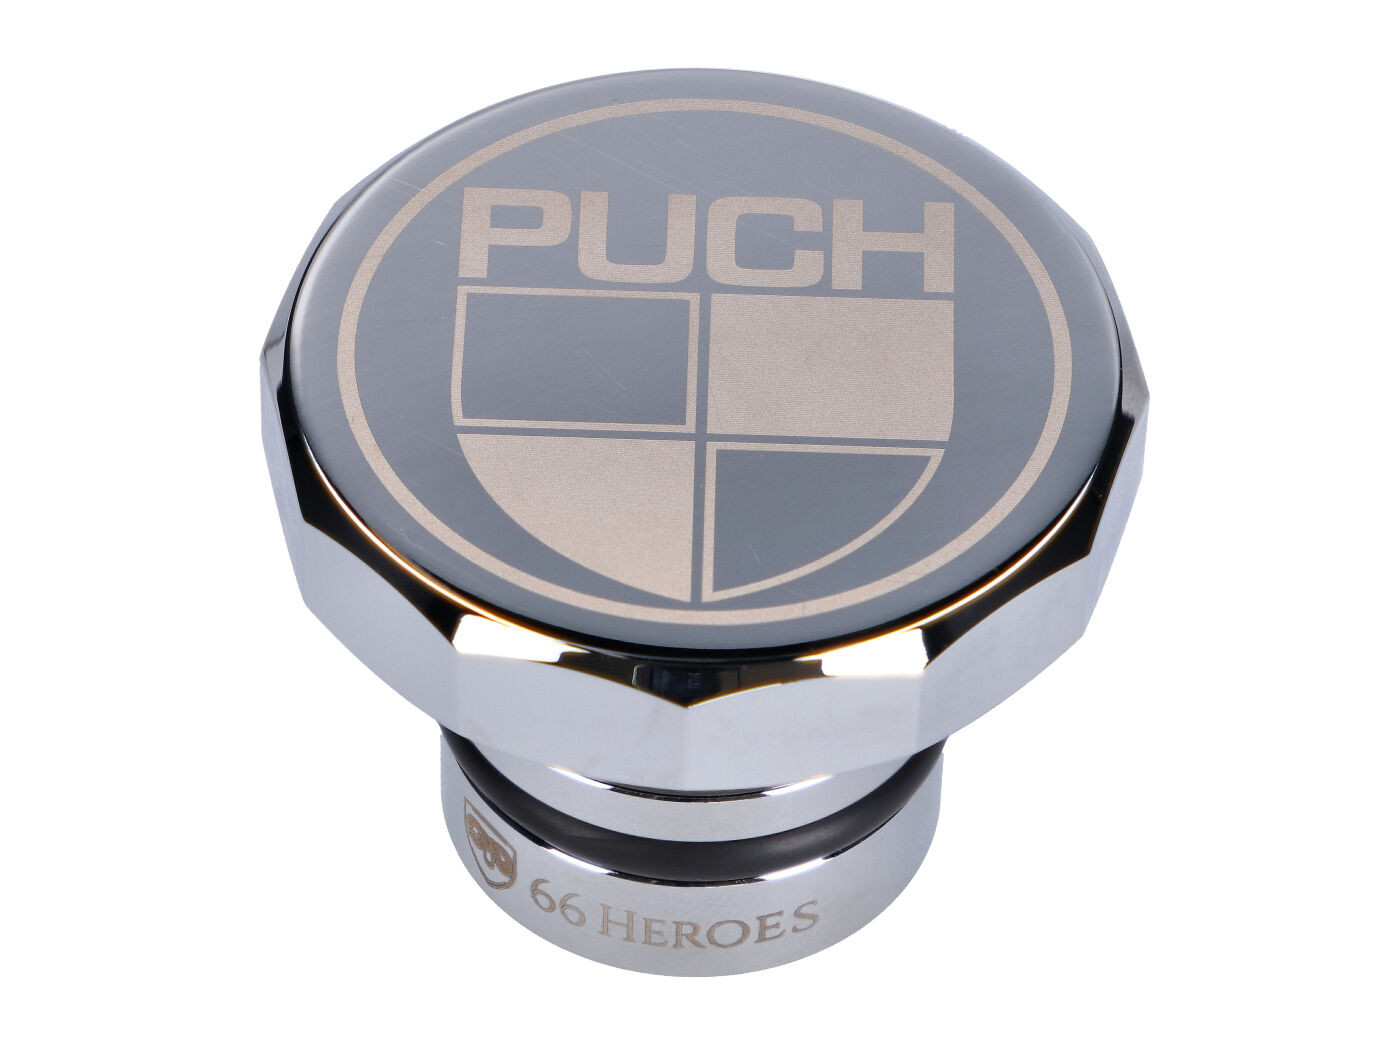 Üzemanyagtöltő sapka 66Heroes alumínium krómozott Puch logóval Puch Maxi S, N modellekhez